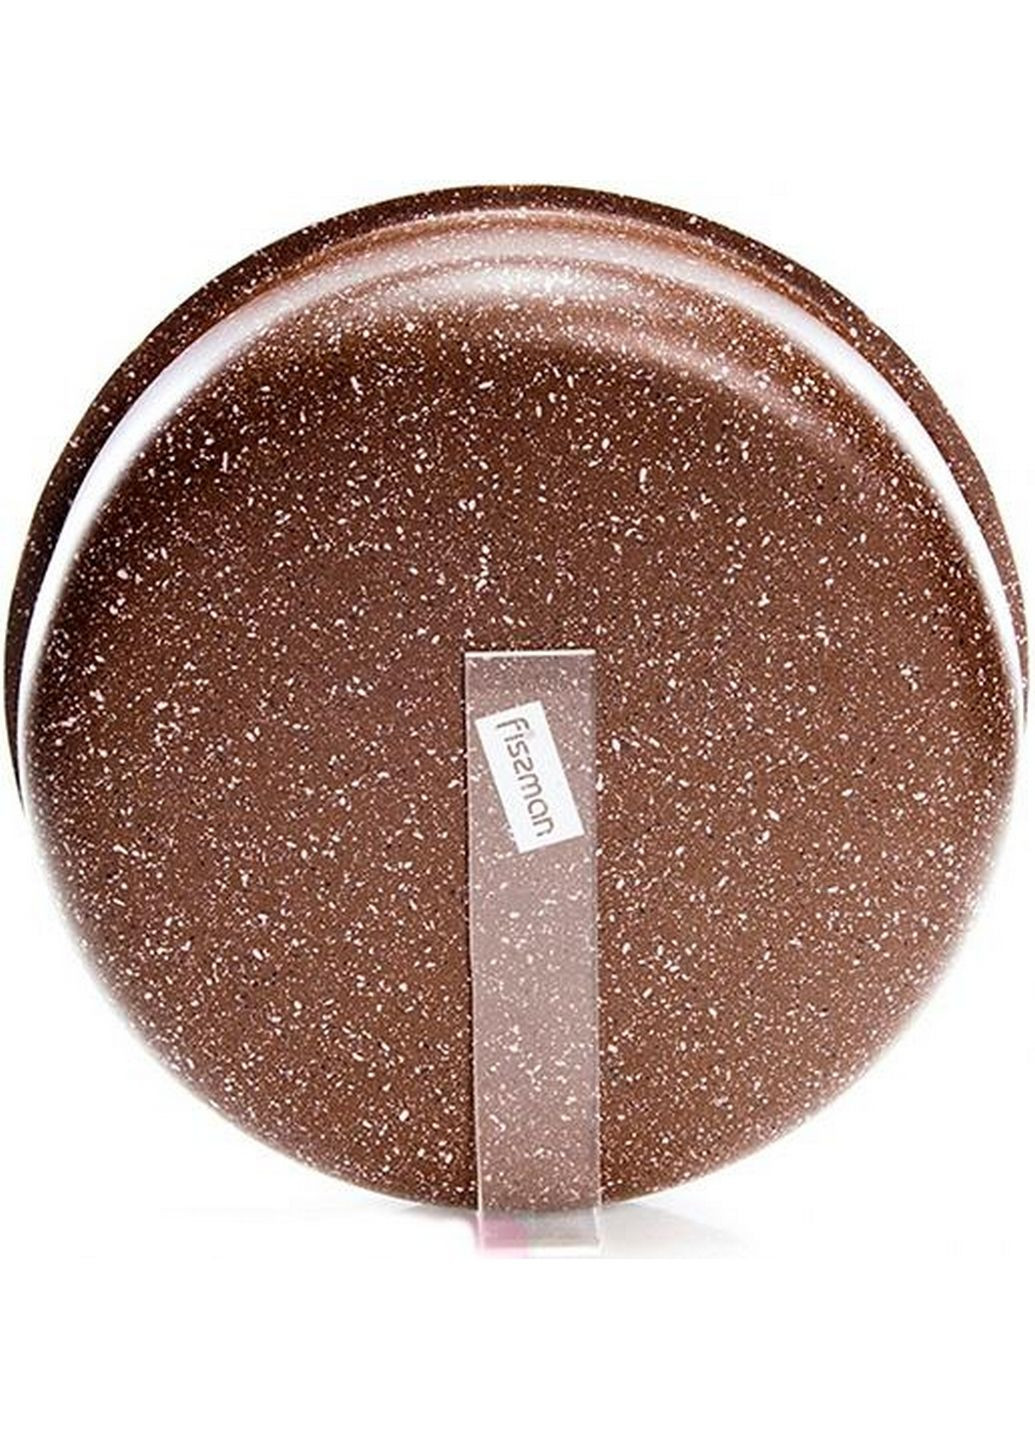 Форма для выпечки Chocolate Breeze, круглая Ø24х6,4 см Fissman (289461960)